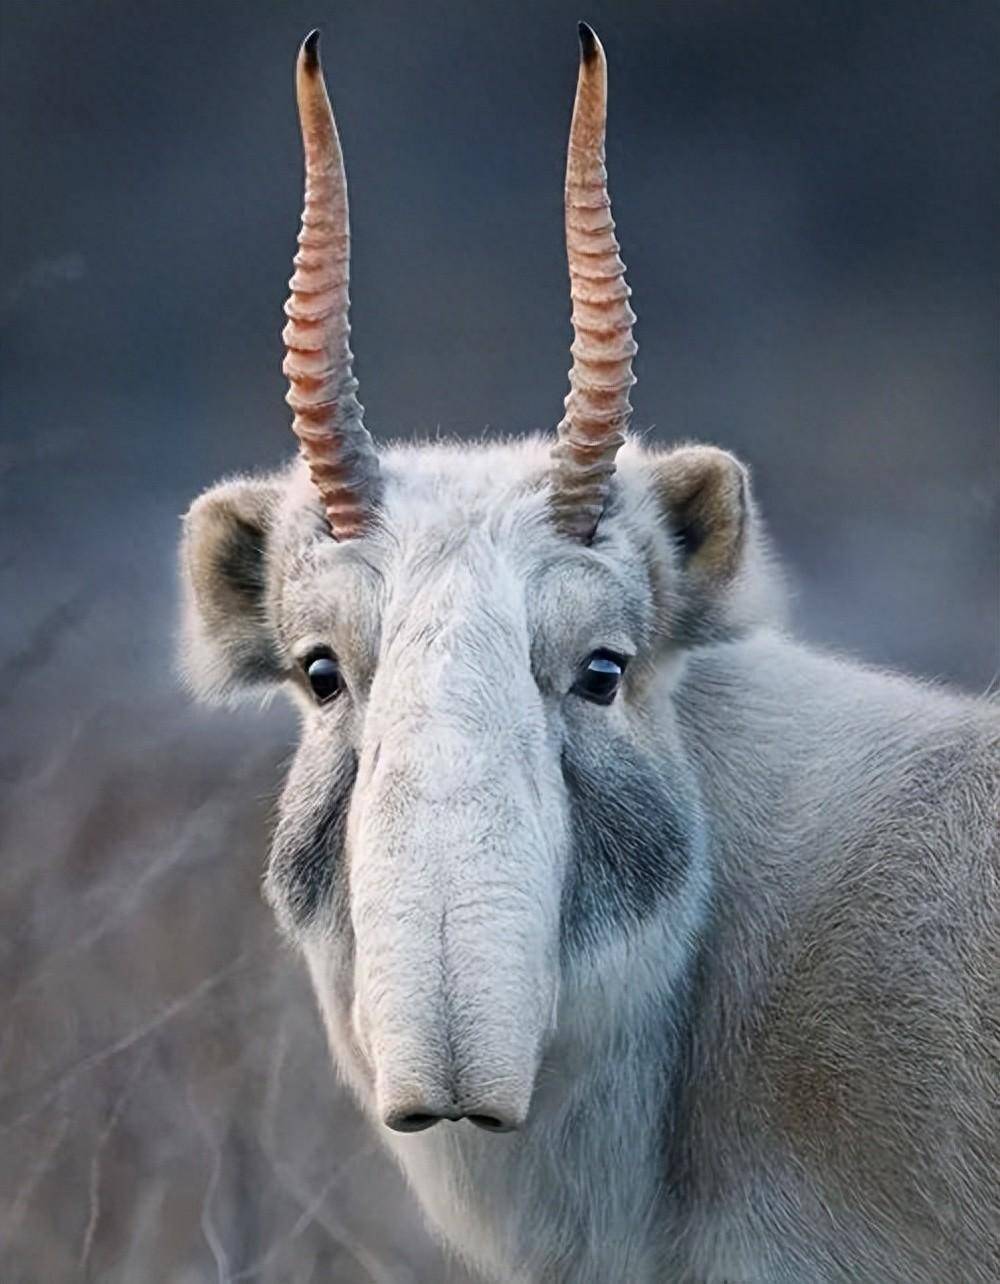 【动物趣谈】高鼻羚羊:大鼻子的魅力与生存智慧